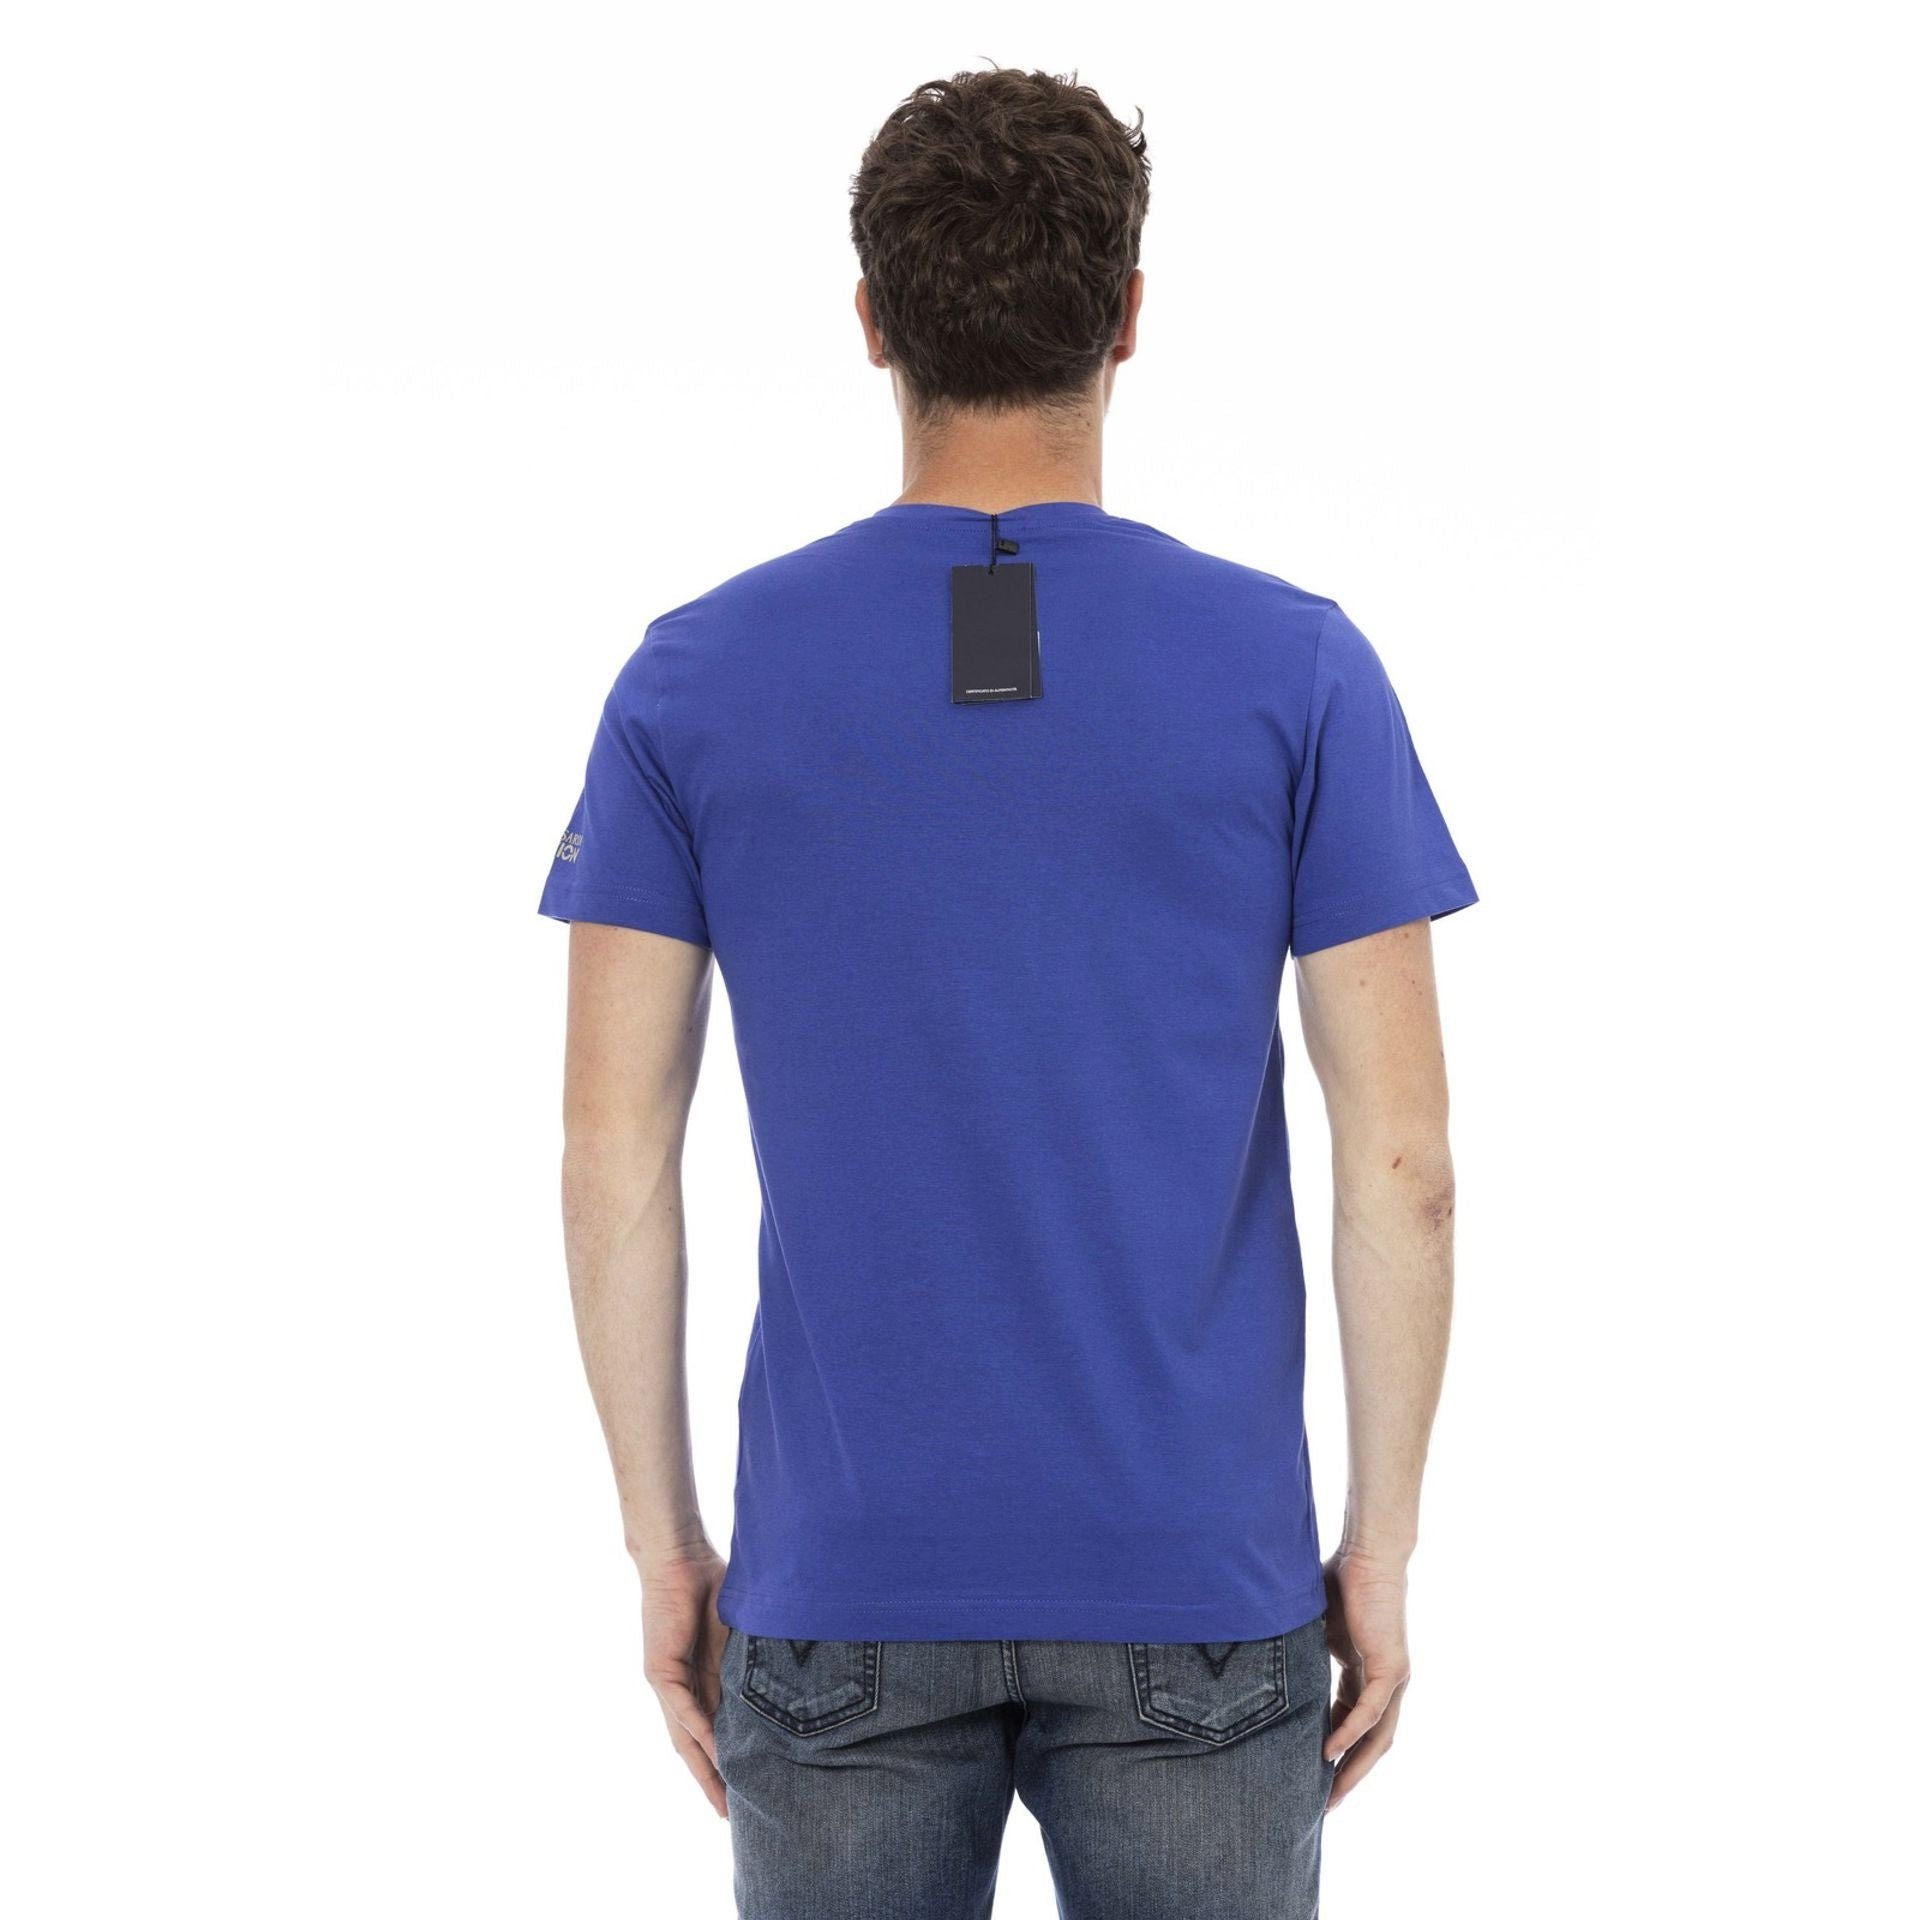 sich zeichnet Logo-Muster Trussardi stilvolle subtile, T-Shirts, Trussardi aus, Blau durch verleiht eine Action das aber Es Note das T-Shirt